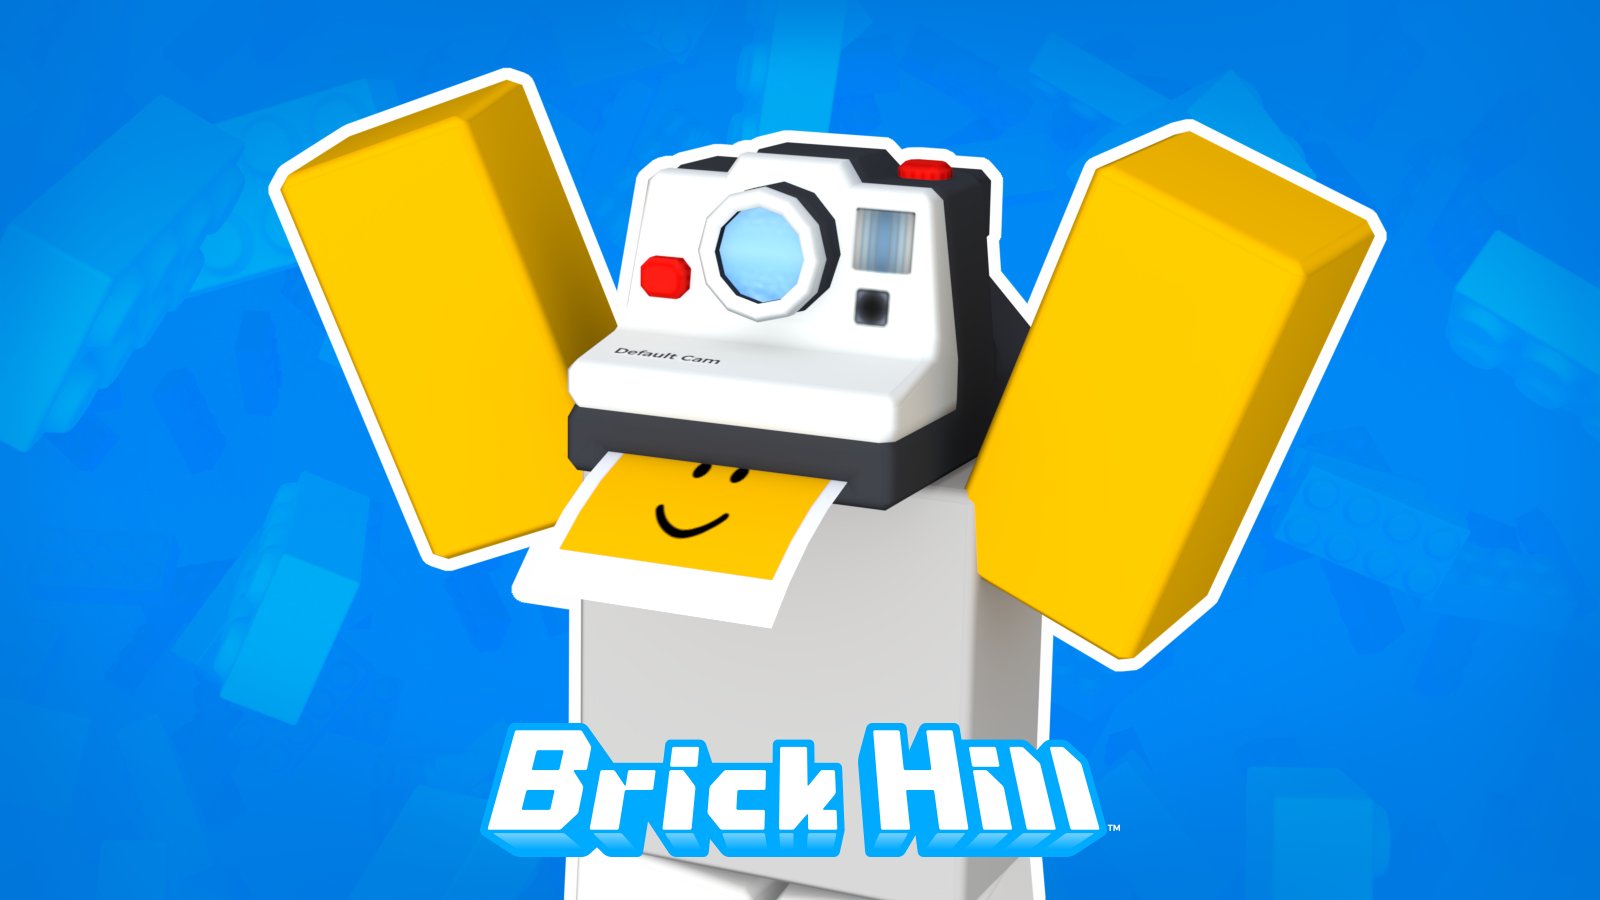 roblox twitter - Brick Hill